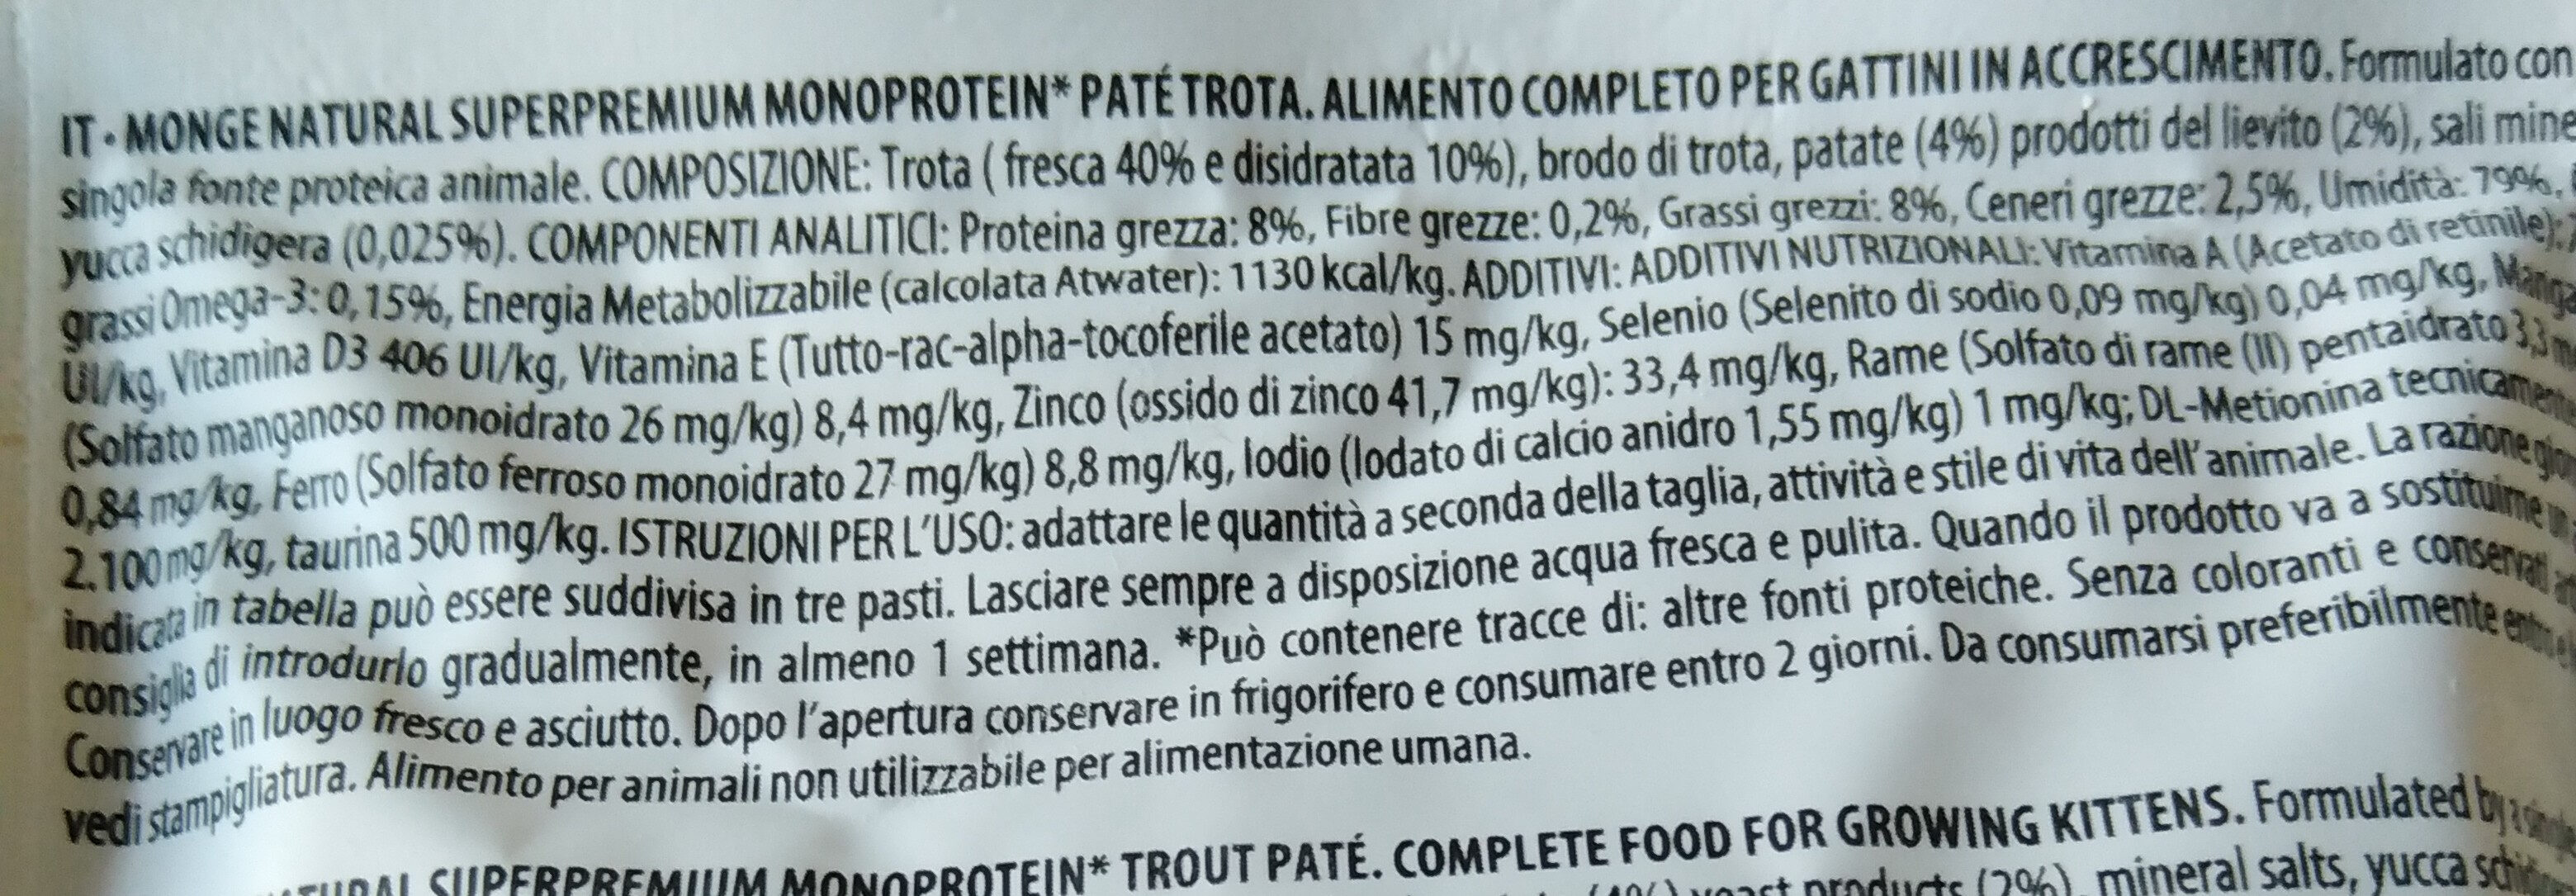 kitten patè trota - Nutrition facts - it